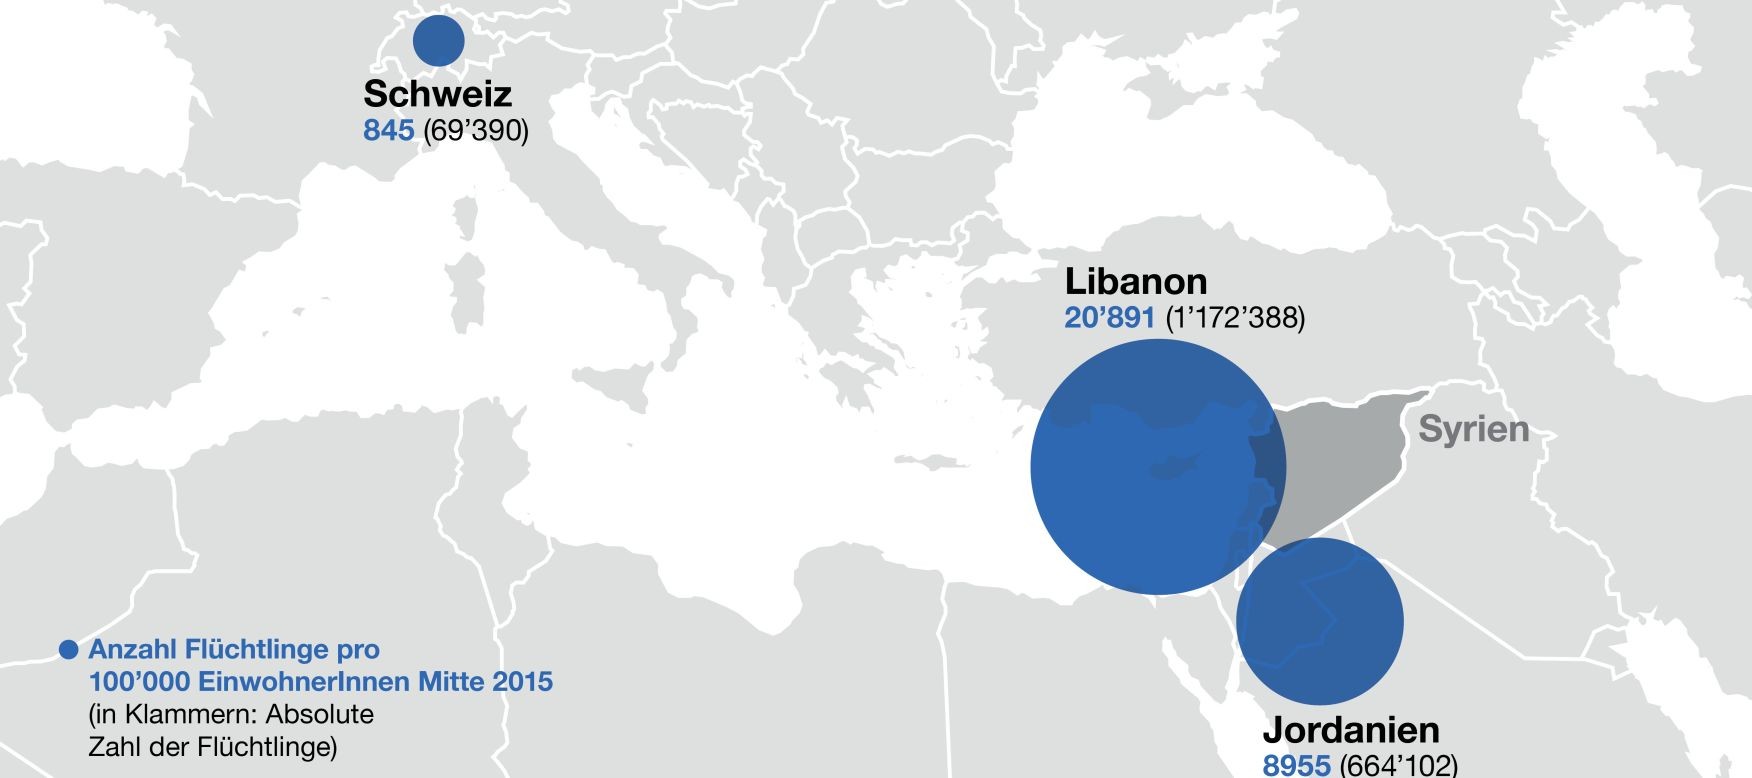 In Grafik 1 ist die Anzahl Flüchtlinge pro 100'000 EinwohnerInnen Mitte 2015 angegeben.